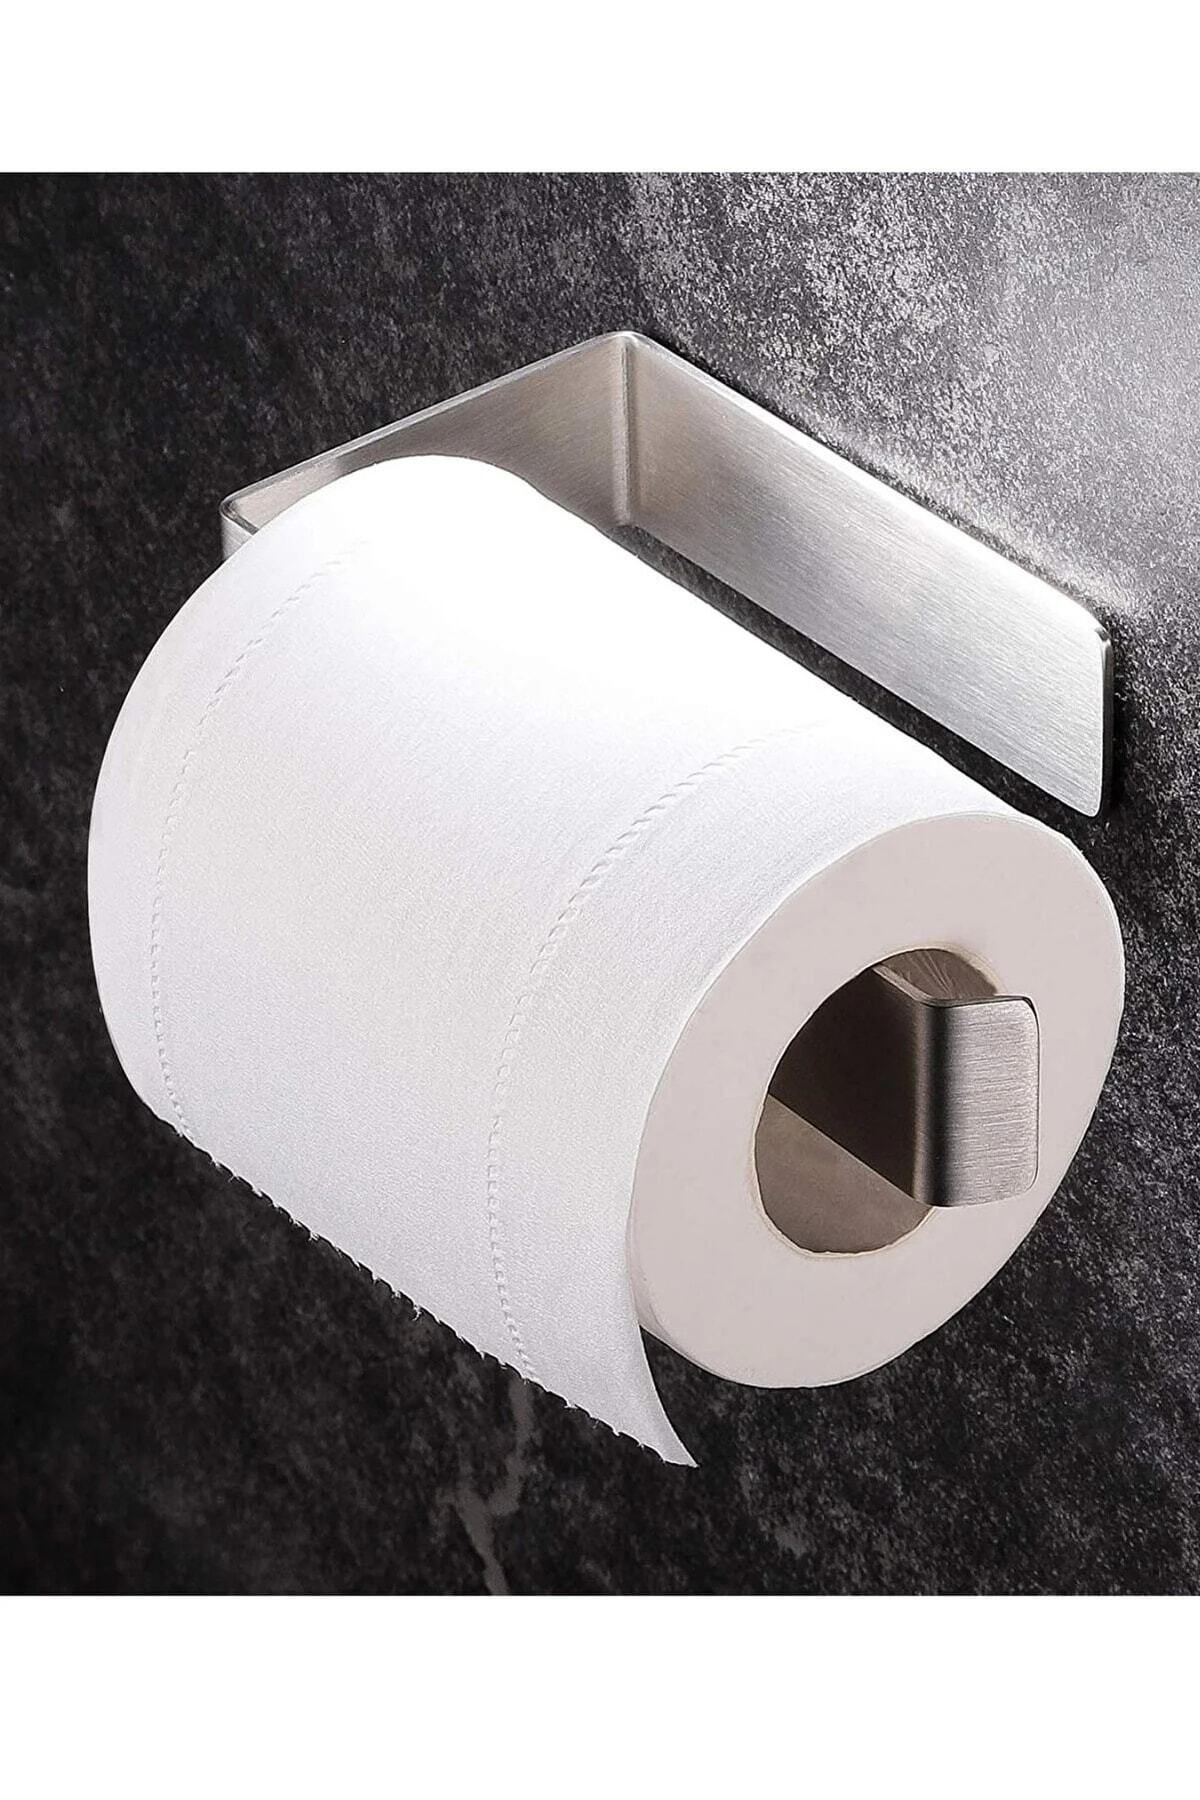 VİYAM Paslanmaz Çelik Wc Kağıtlık Tuvalet Kağıtlığı Tuvalet Kağıdı Askısı Yapışkanlı Tasarım